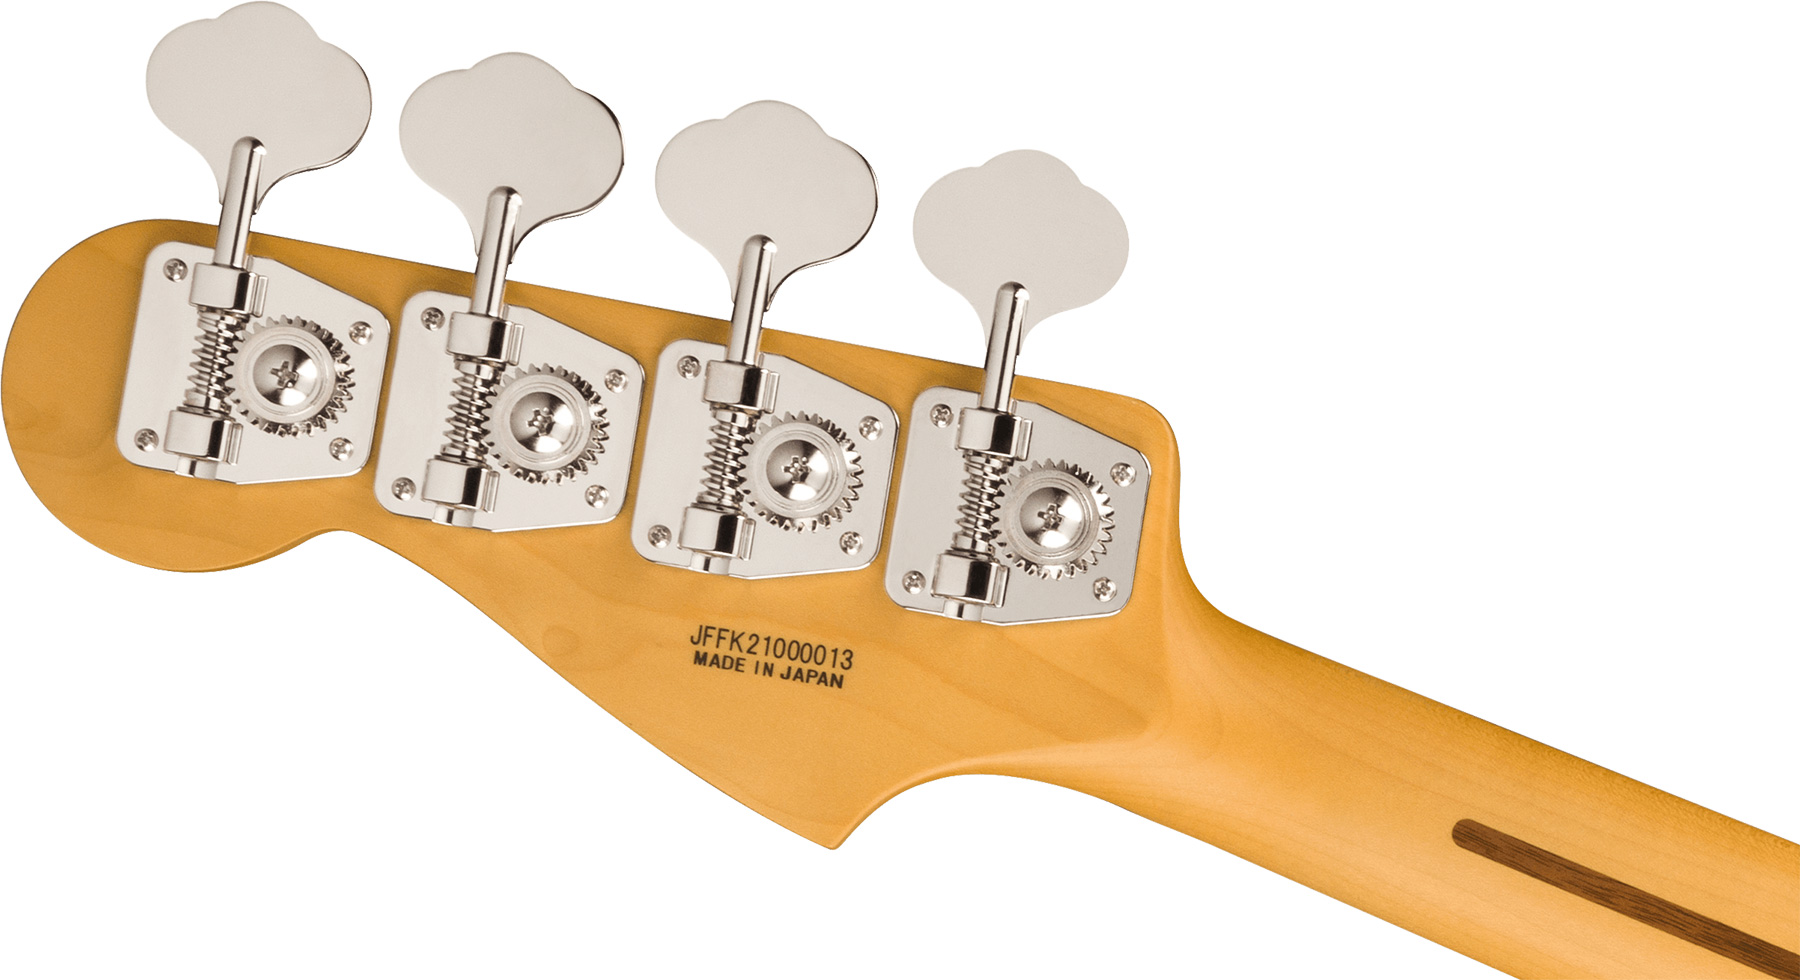 Fender Precision Bass Aerodyne Special Jap Rw - Bright White - Solidbody E-bass - Variation 3